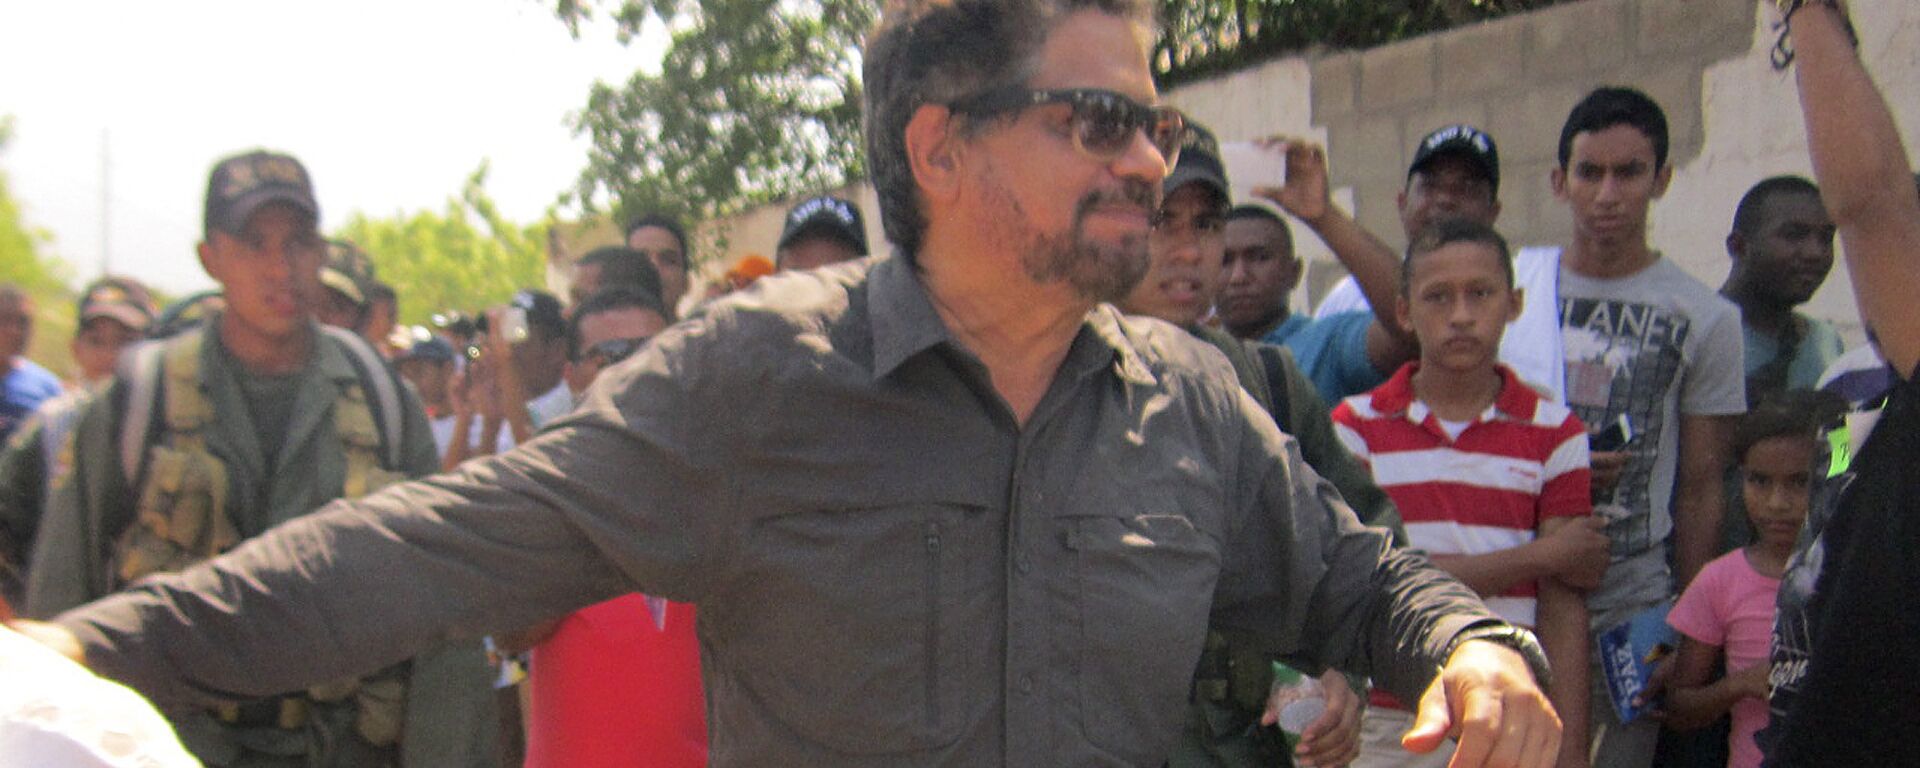 Iván Márquez, uno de los líderes de las FARC, durante la reunión en La Guajira, 18 de febrero de 2016 - Sputnik Mundo, 1920, 04.07.2022